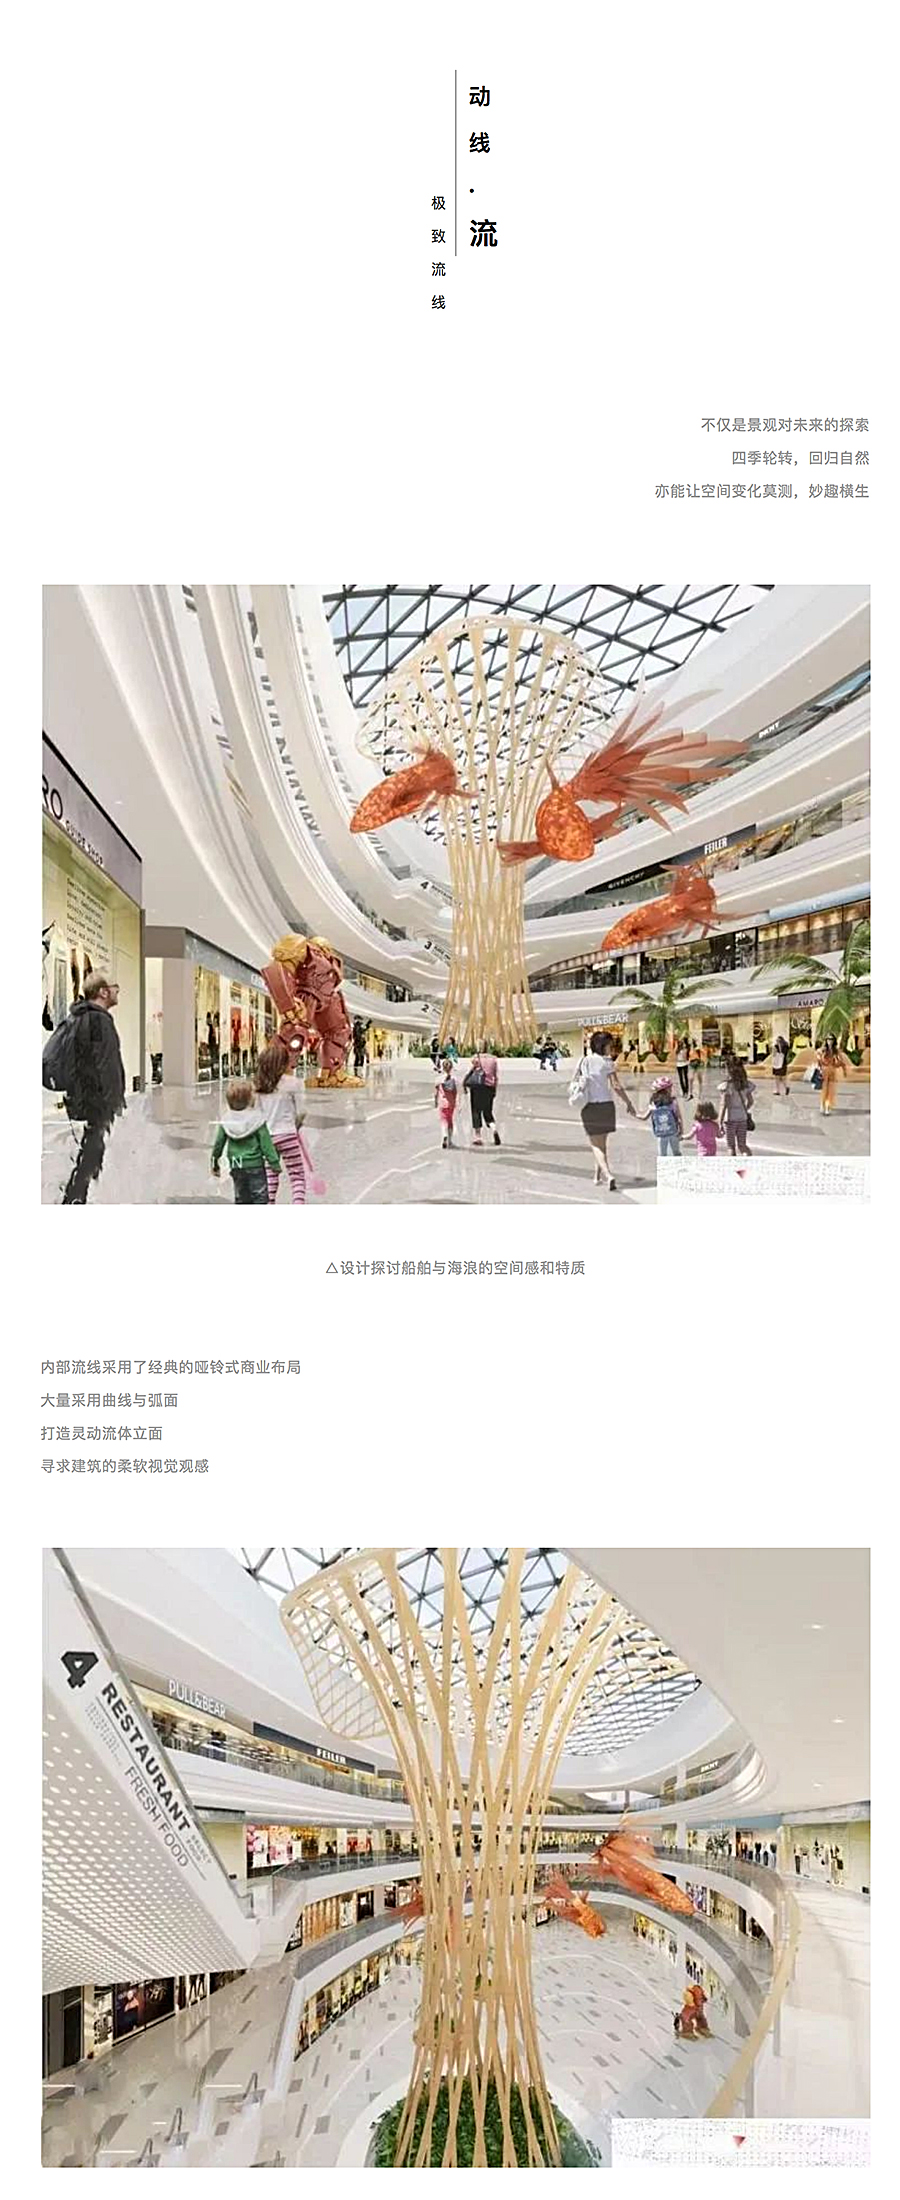 重构感知空间丨太和城商业广场_0009_图层-10.jpg